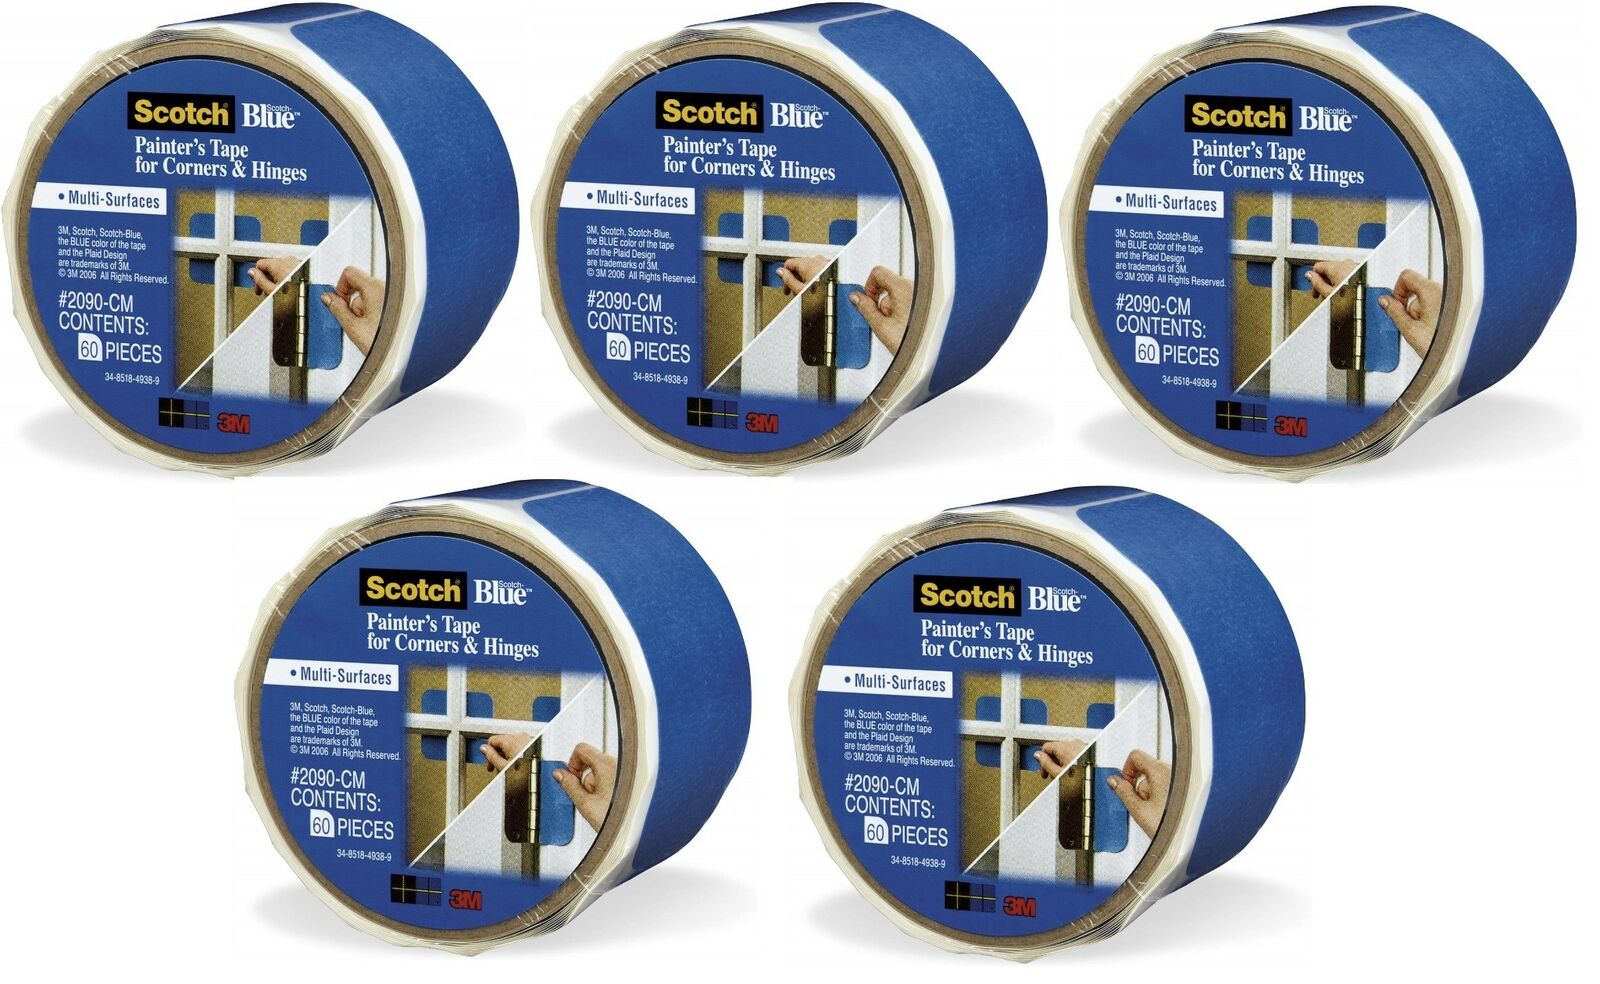 3M ScotchBlue 2090-CM Multi-Surface Painters Tape For Corners & Hinges (5 Rolls)